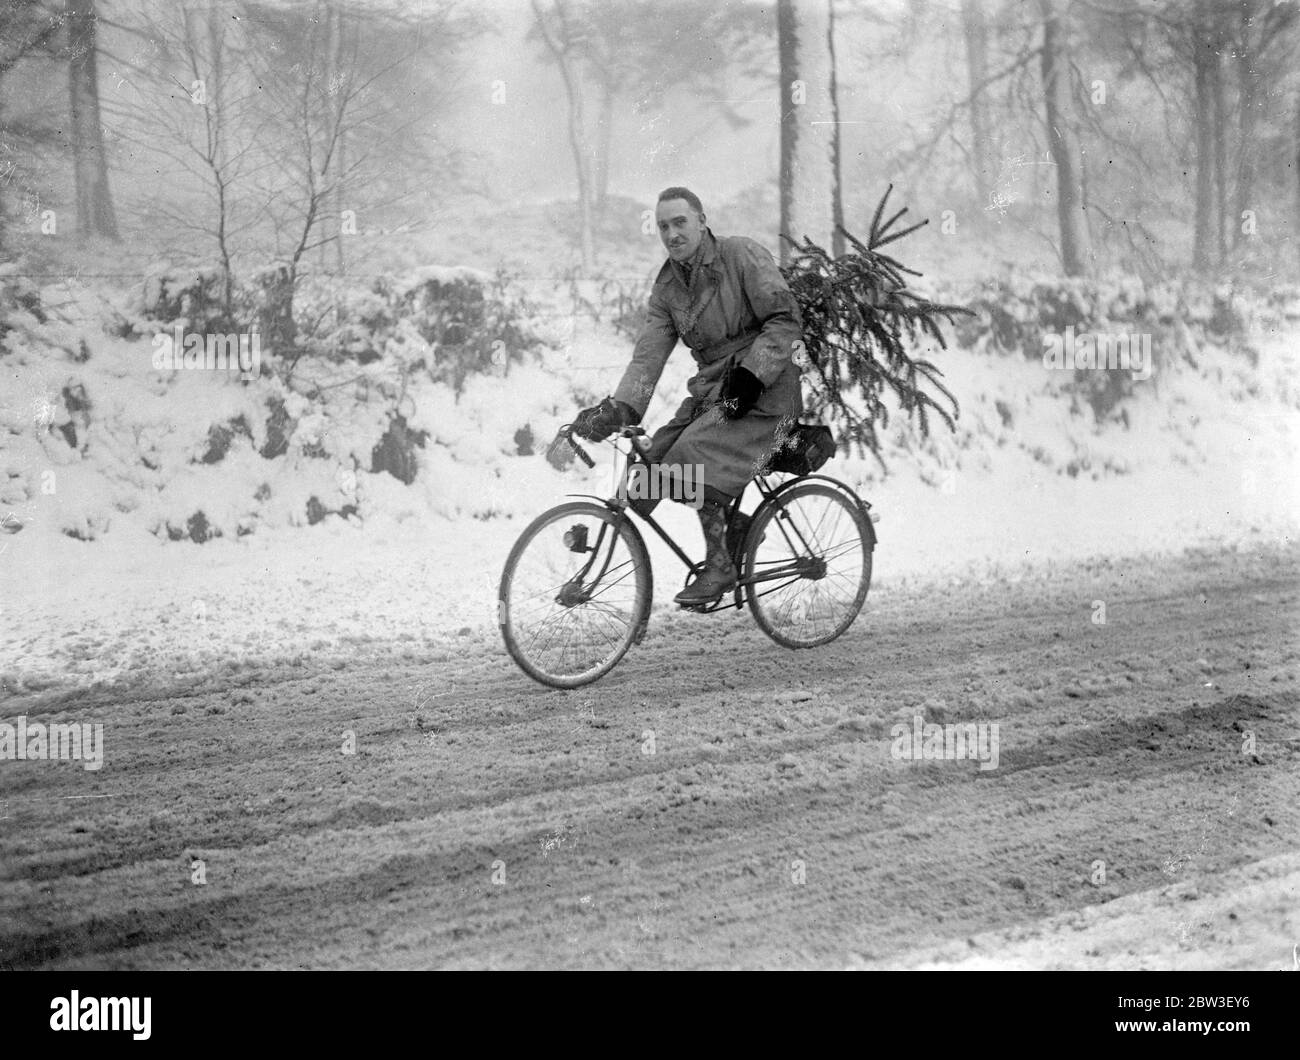 Mit nach Hause zu tragen seinen weihnachtsbaum . Cheshire und Derbyshire scheinen von einem weißen weihnachten versichert. Schnee ist gefallen, die Moore zu einer Tiefe von mehreren Zoll zu bedecken. Foto zeigt, nach Hause tragen seinen weihnachtsbaum in wahren weihnachtswetter am Alderley Edge, Cheshire. 21 Dezember 1935 Stockfoto